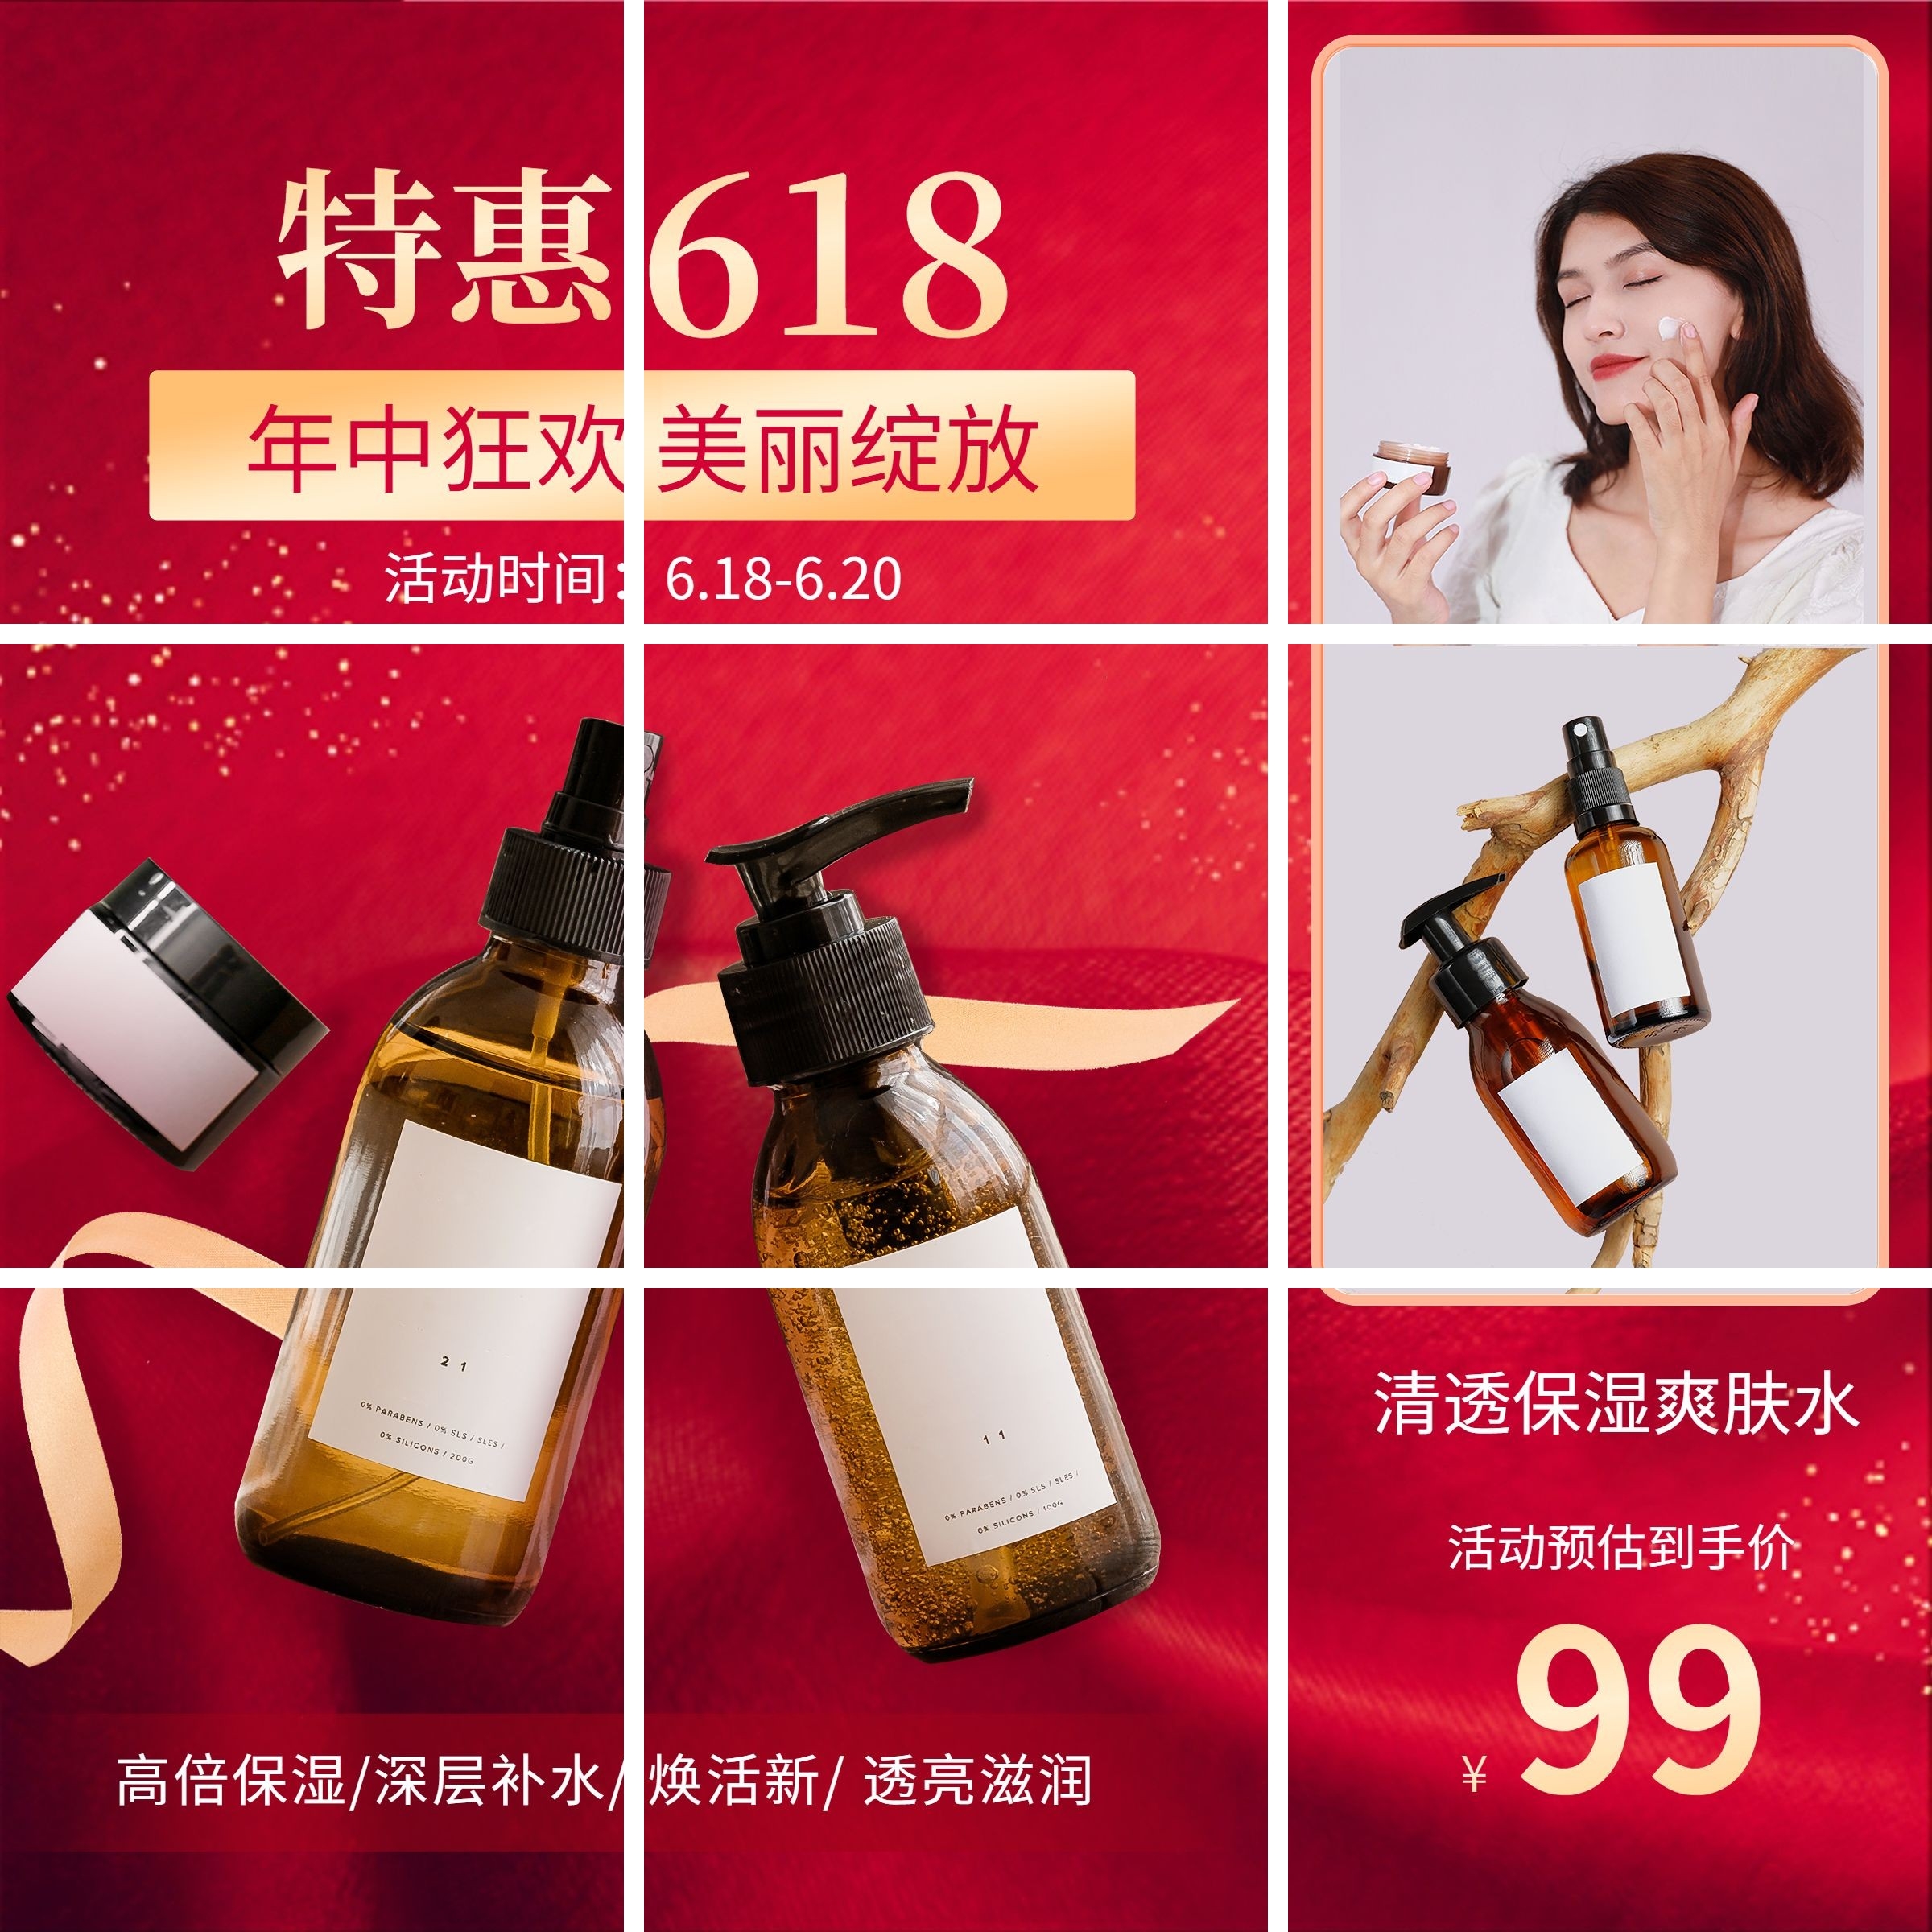 618美容美妆产品优惠营销九宫格